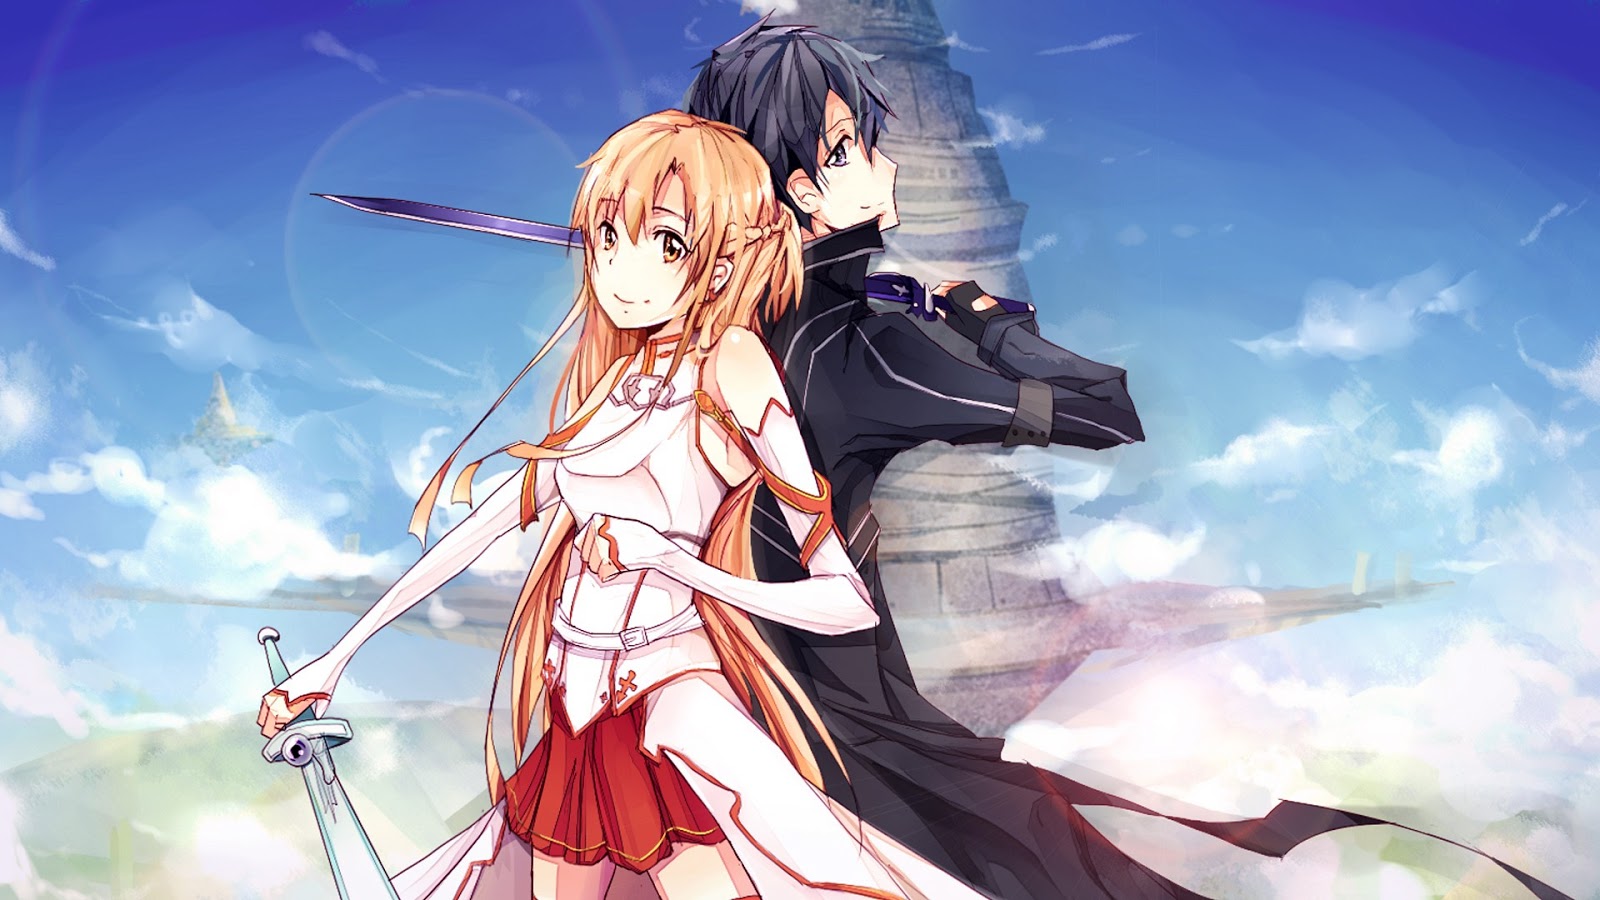 Anime & Manga Wallpaper: Sword Art Online Wallpaper